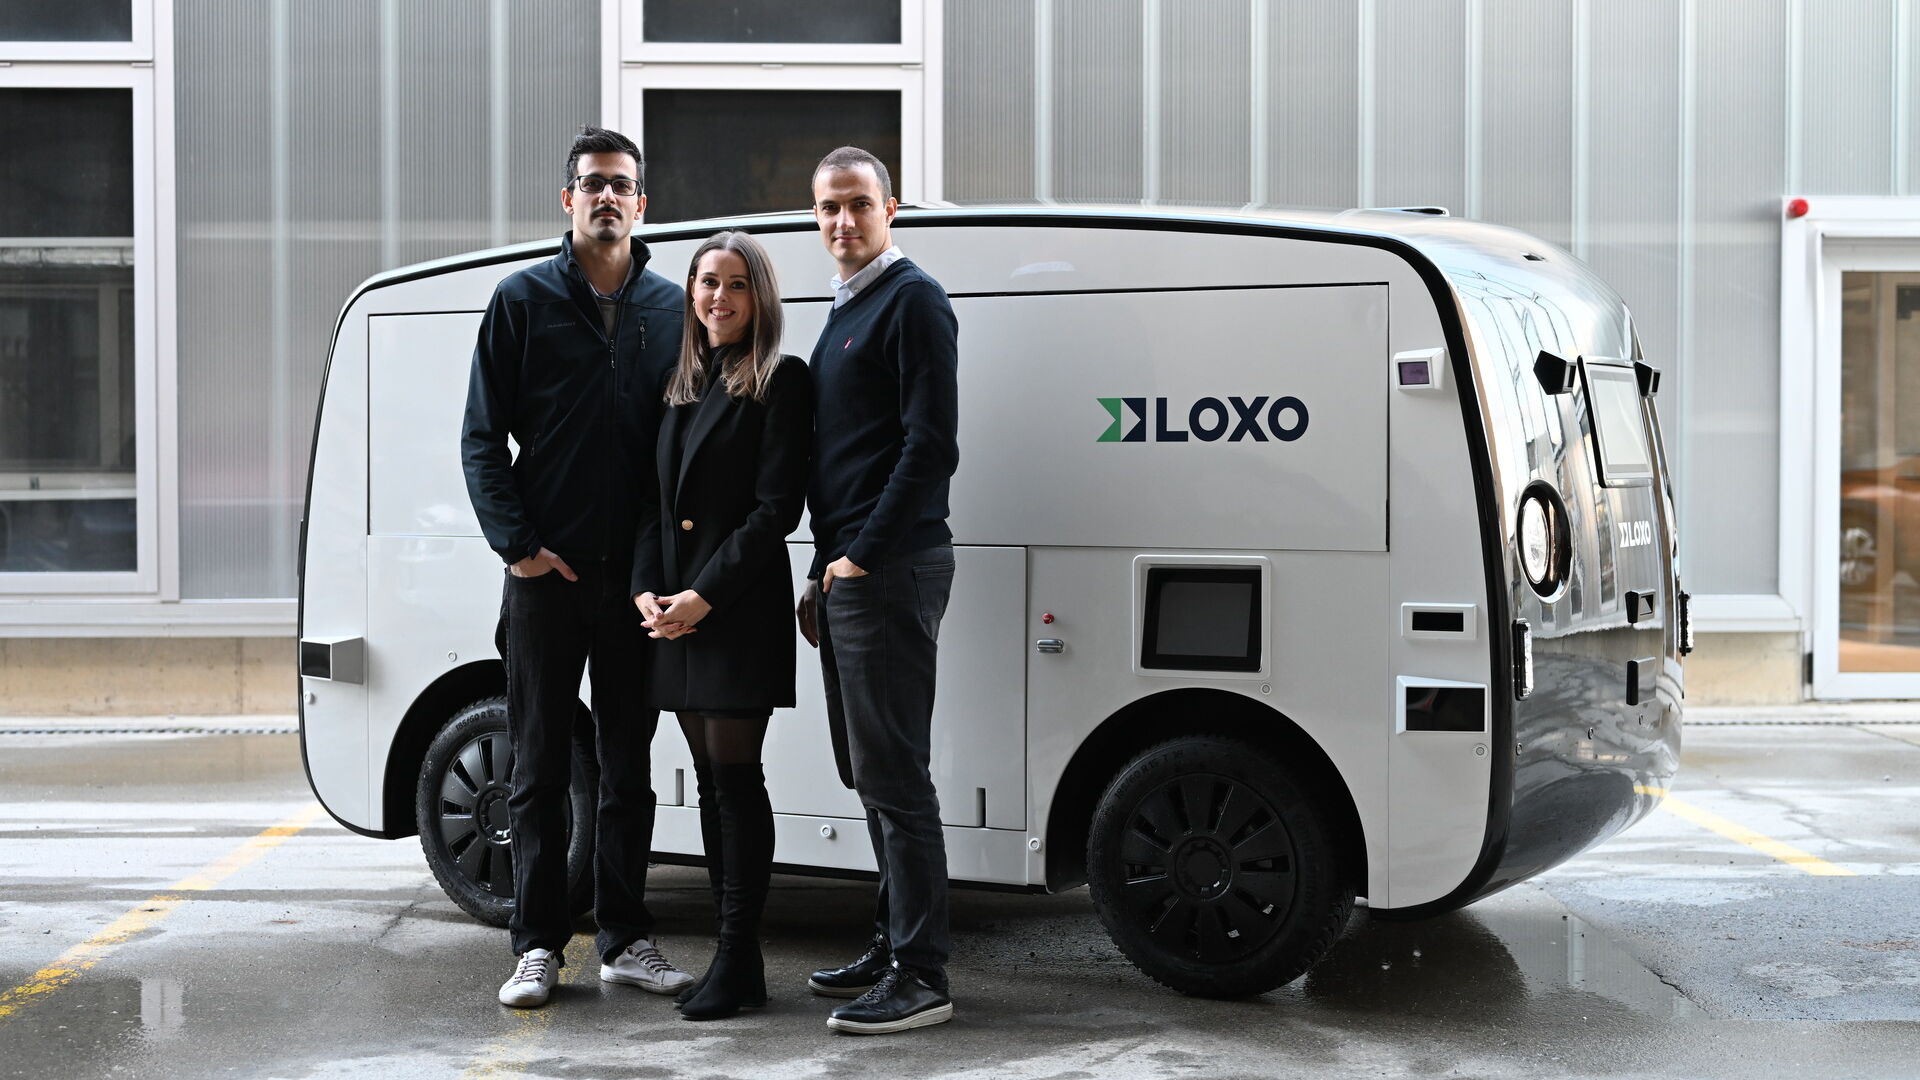 LOXO: Амин Амини, Лара Амини-Рентш и Клаудио Паницца, основатели бернского стартапа LOXO, полностью построили в Швейцарии беспилотный фургон Alpha для краткосрочных поставок.